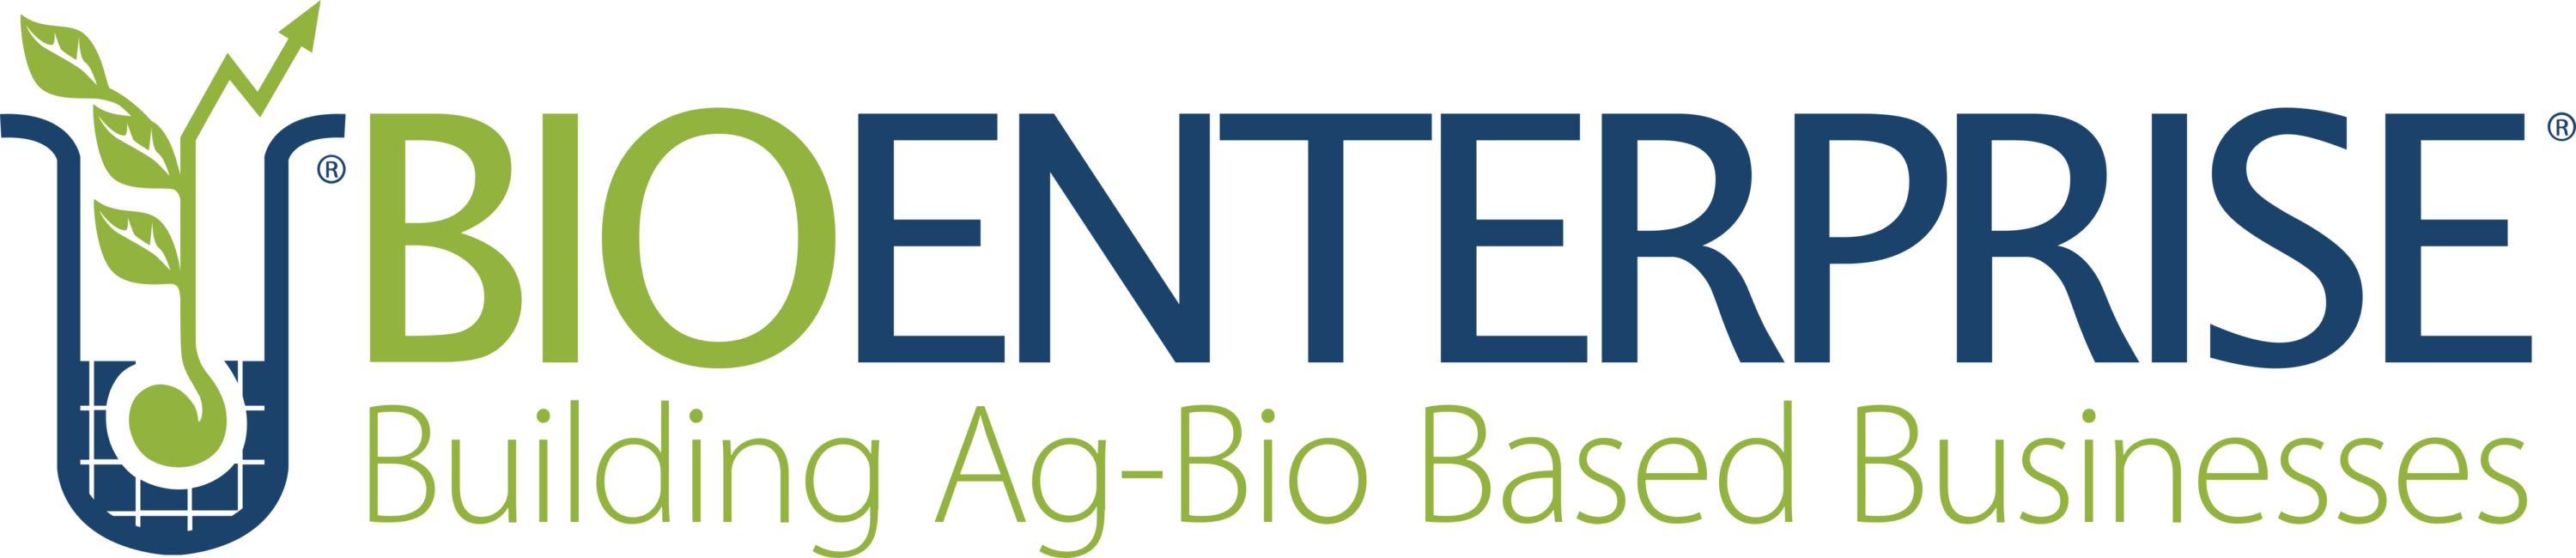 Bioenterprise Canada Logo